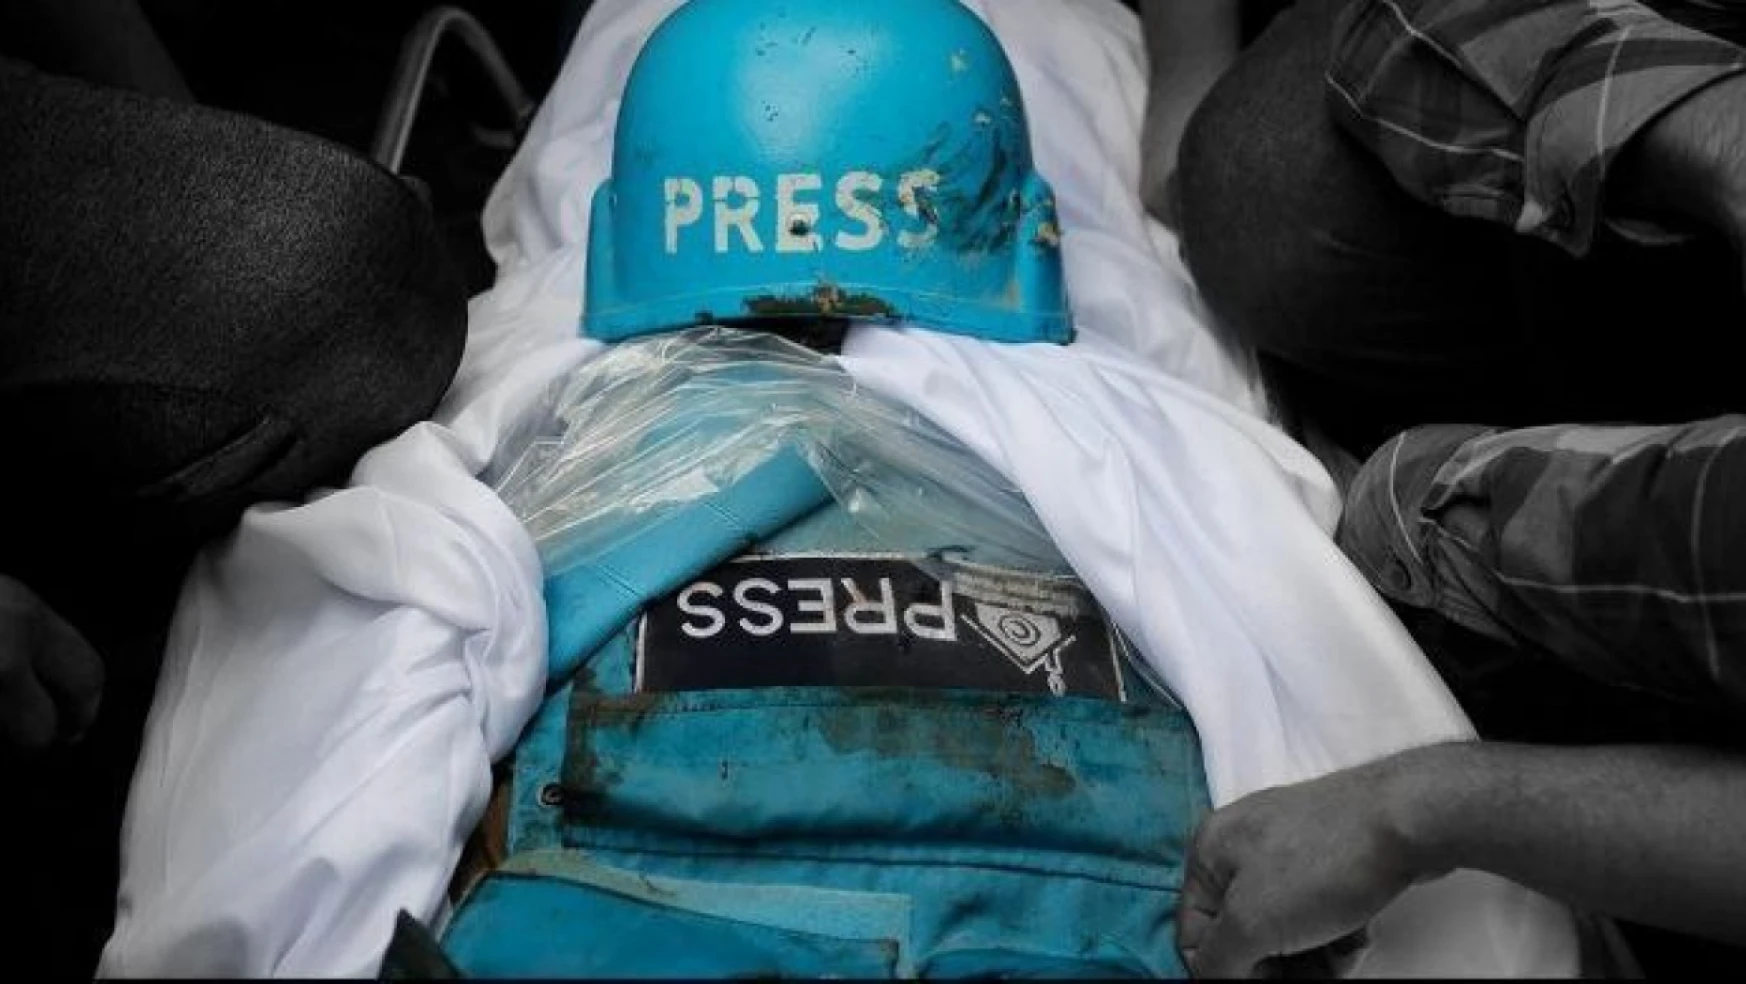 İngiltere'de Gazze'de hayatını kaybeden gazeteci ve sağlık çalışanları anıldı